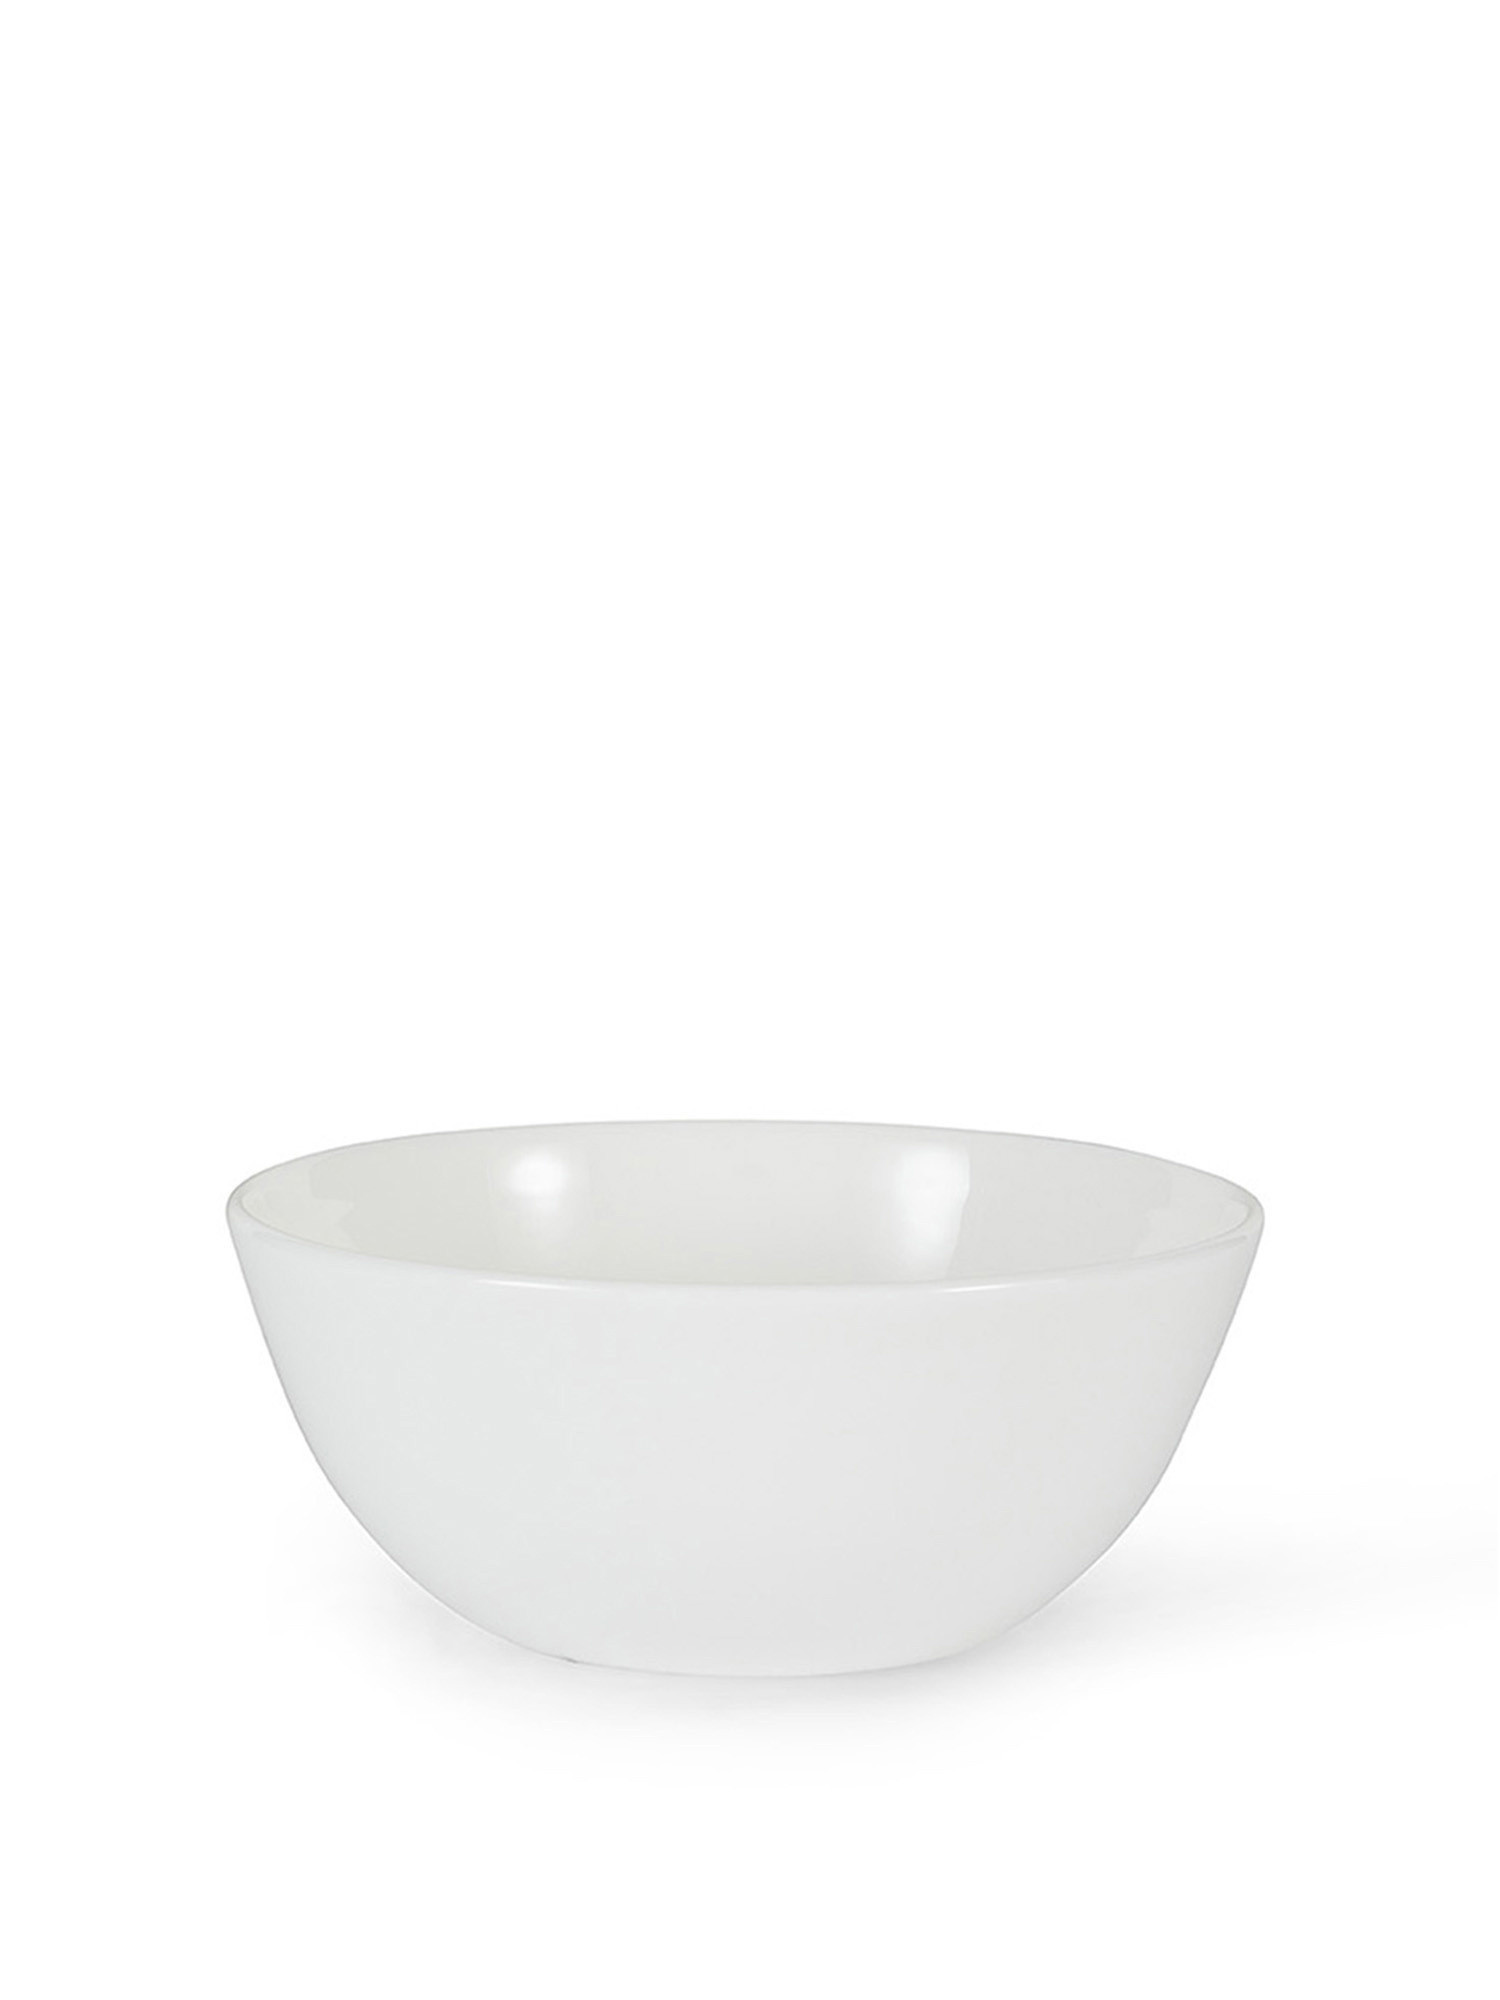 Rosanna new bone china salad bowl, White, large image number 0